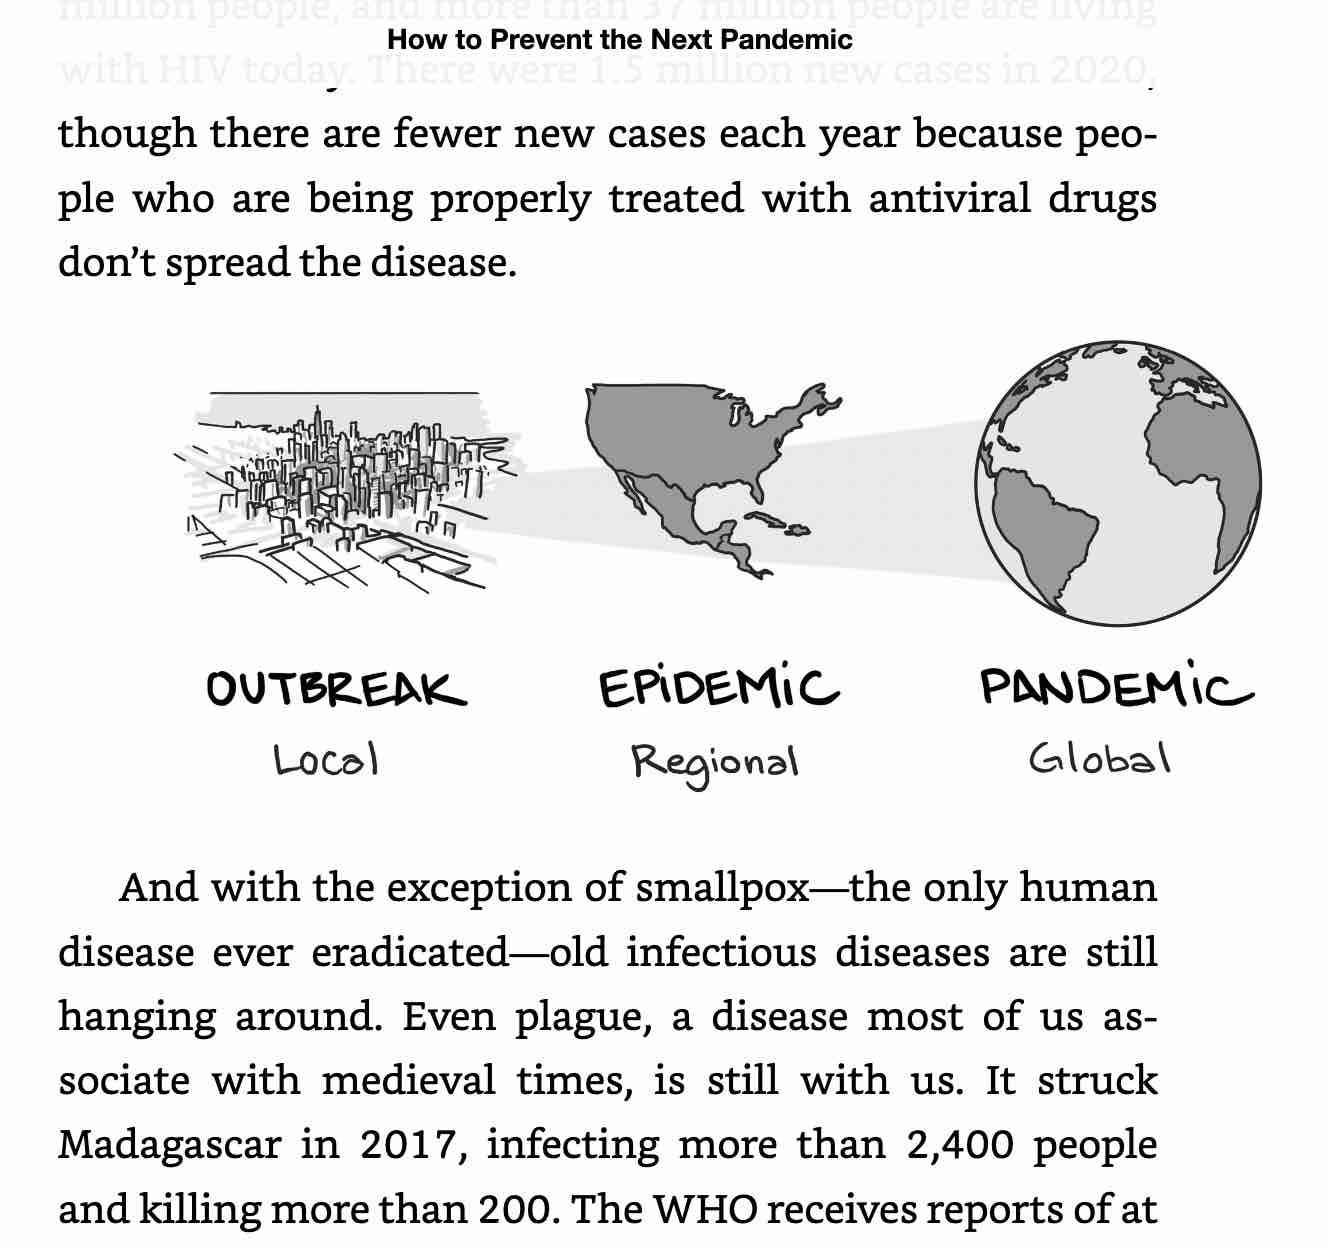 extrait-du-livre-comment-prevenir-la-prochaine-pandemie-par-bill-gates.jpg